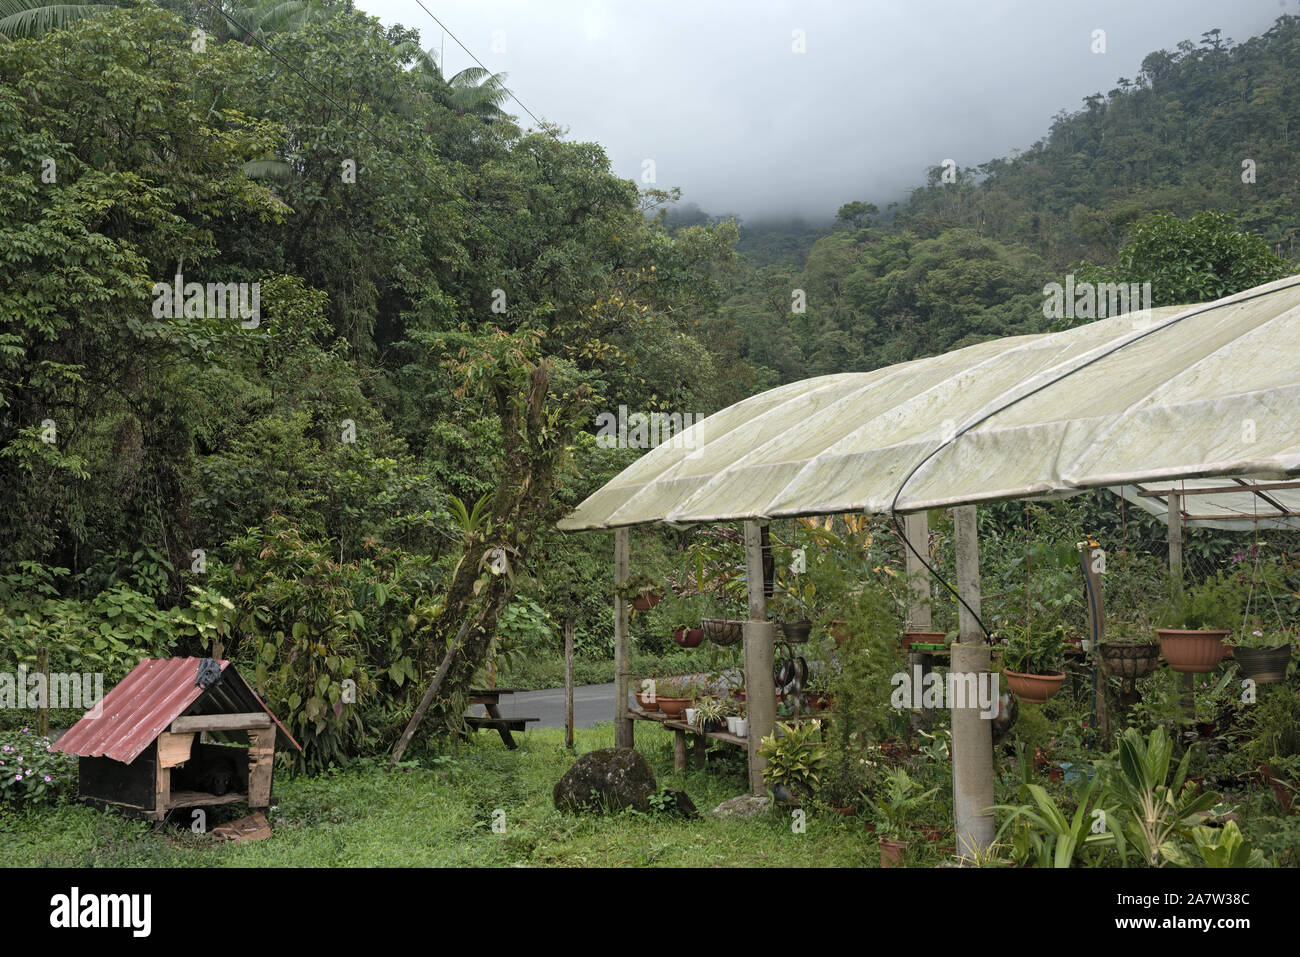 Les petites entreprises de l'horticulture dans la réserve forestière de fortuna panama Banque D'Images